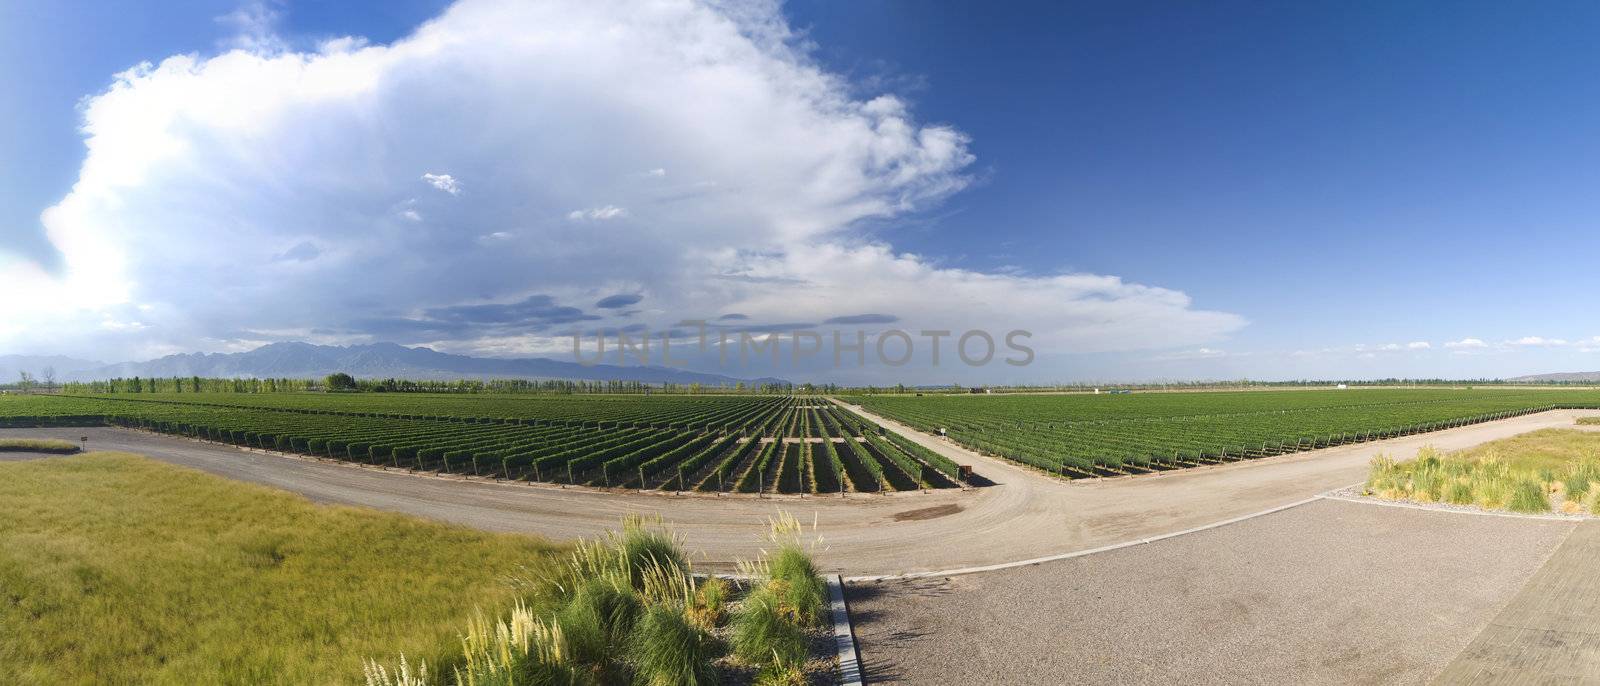 Vineyard panorama by antonprado